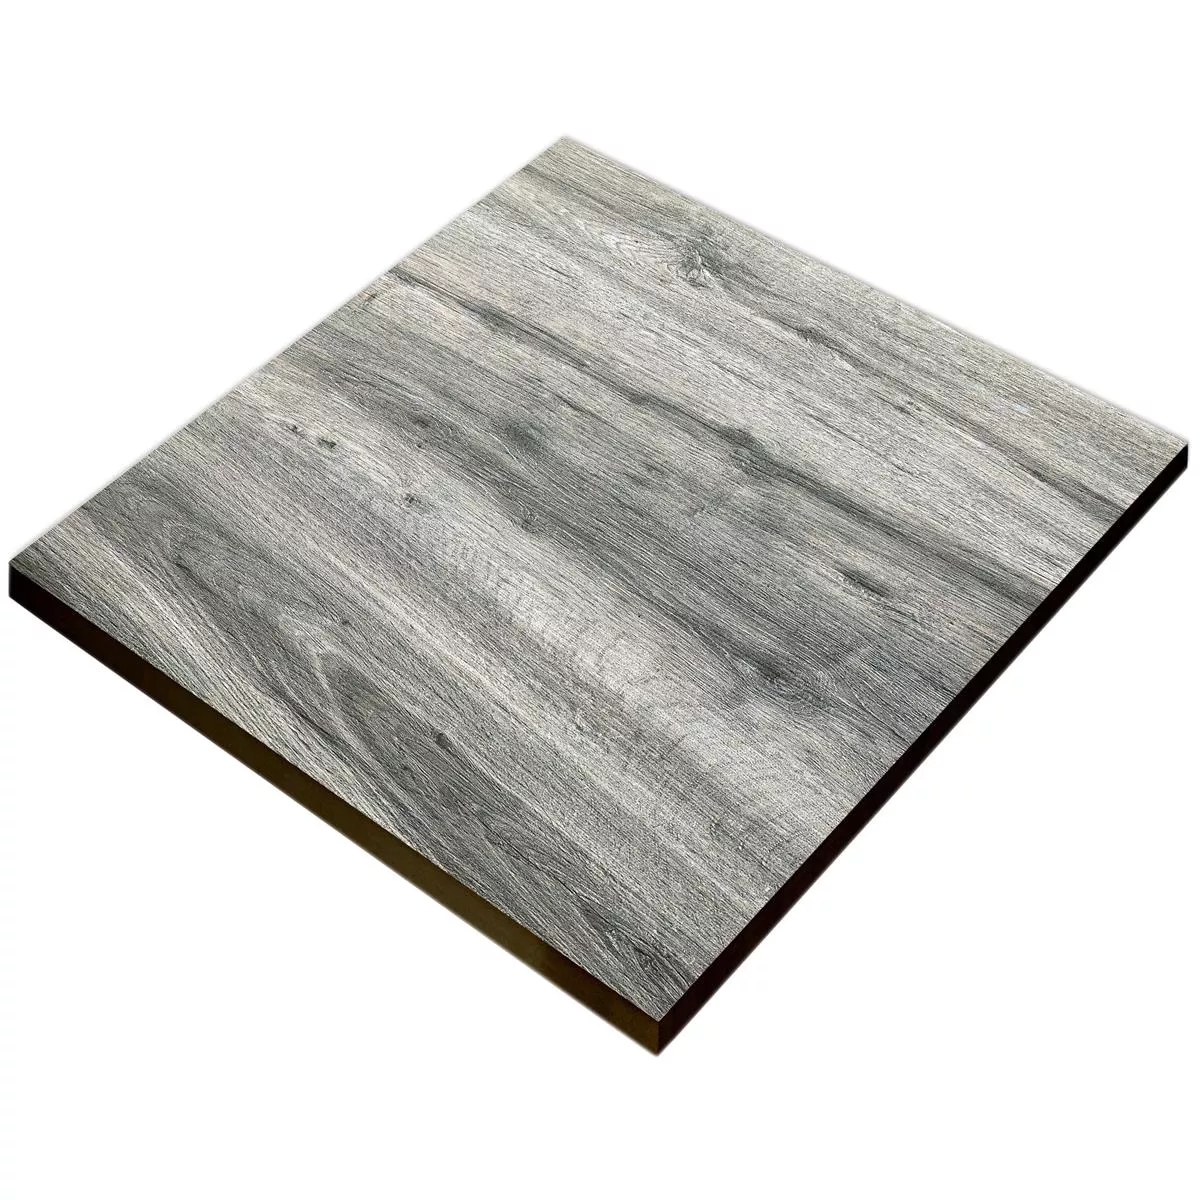 Taras Płyta Starwood Wygląd Drewna Grey 60x60cm